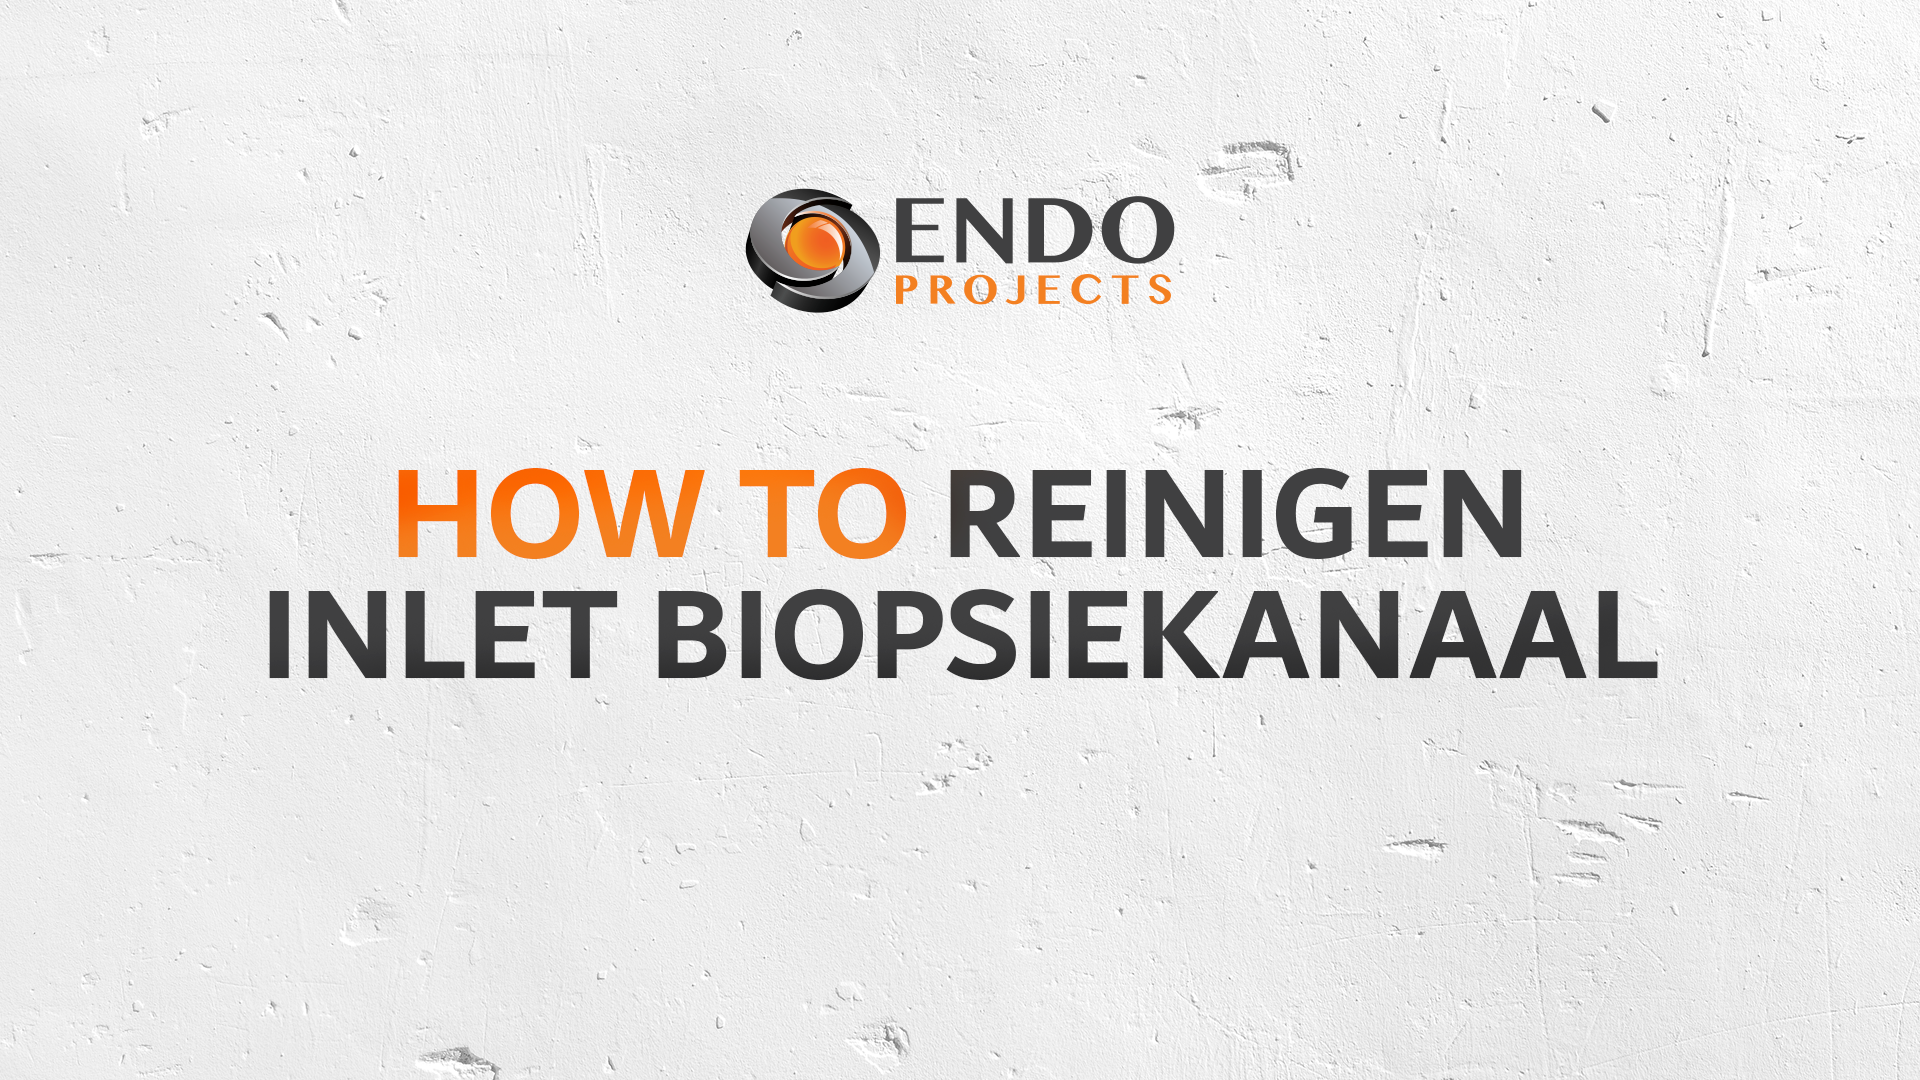 How to: Reinigen inlet biopsiekanaal